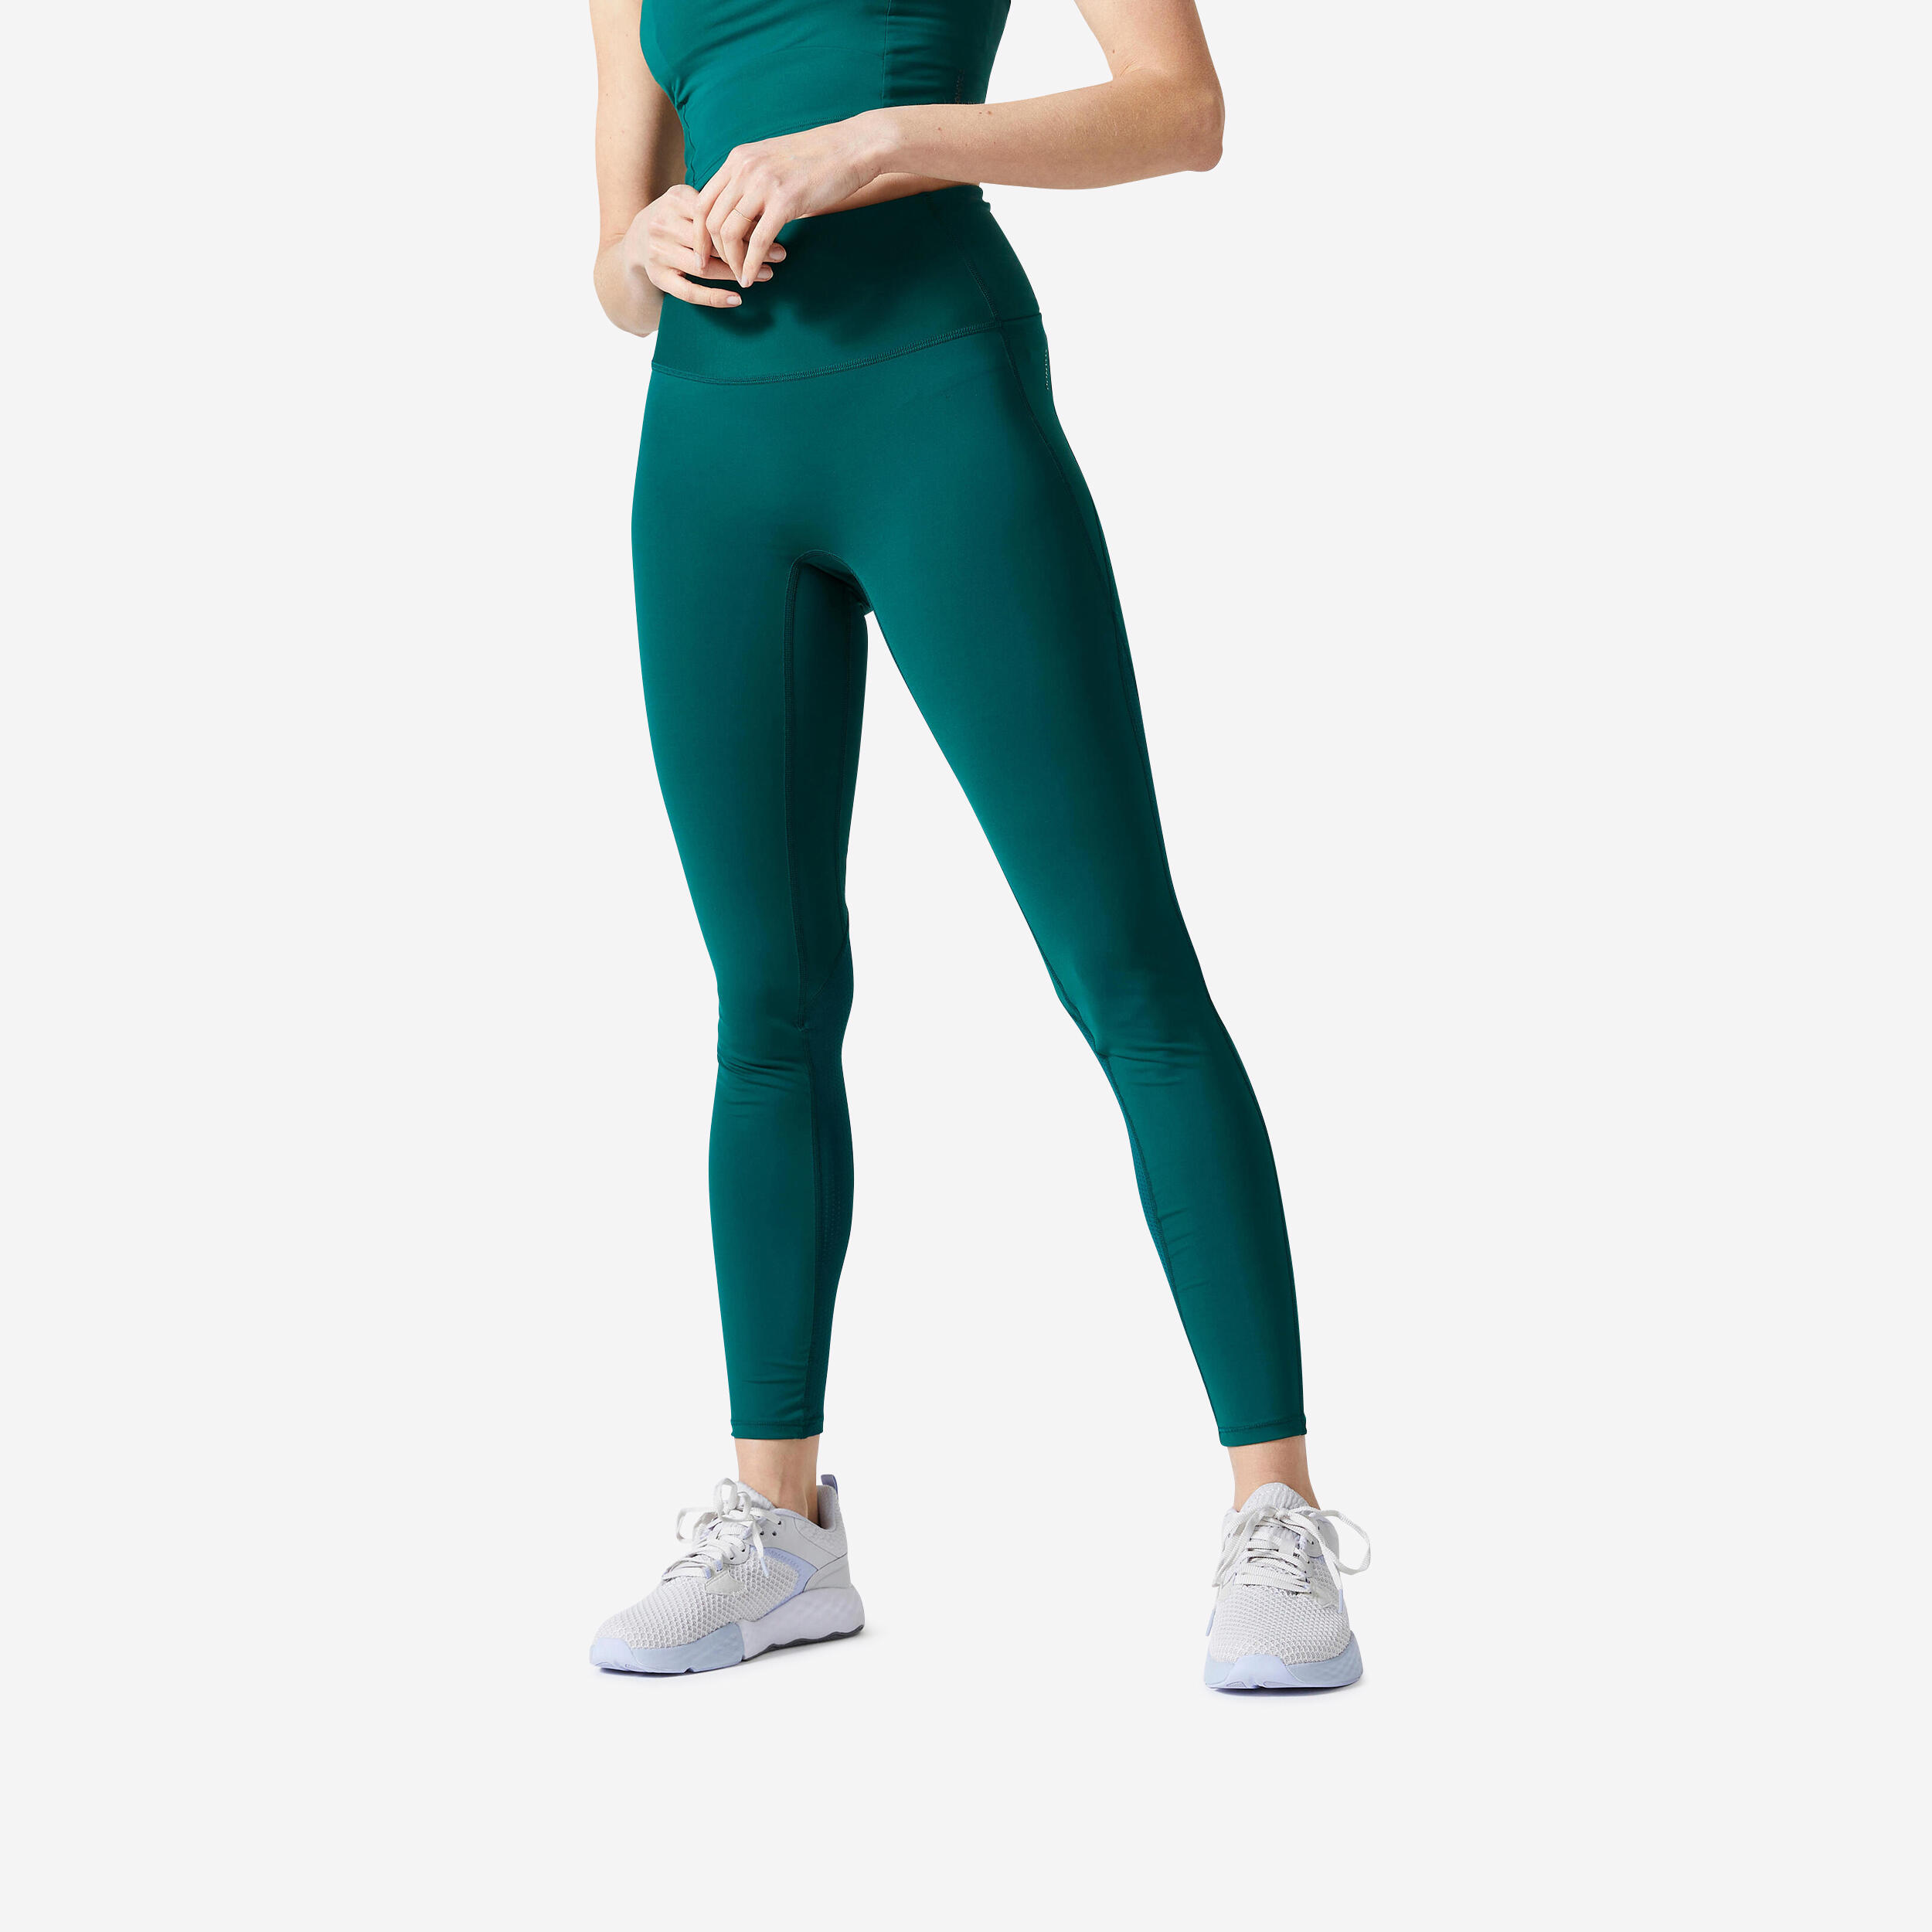 Legging à taille haute femme - FTI 500 - Vert cyprès - Domyos - Décathlon